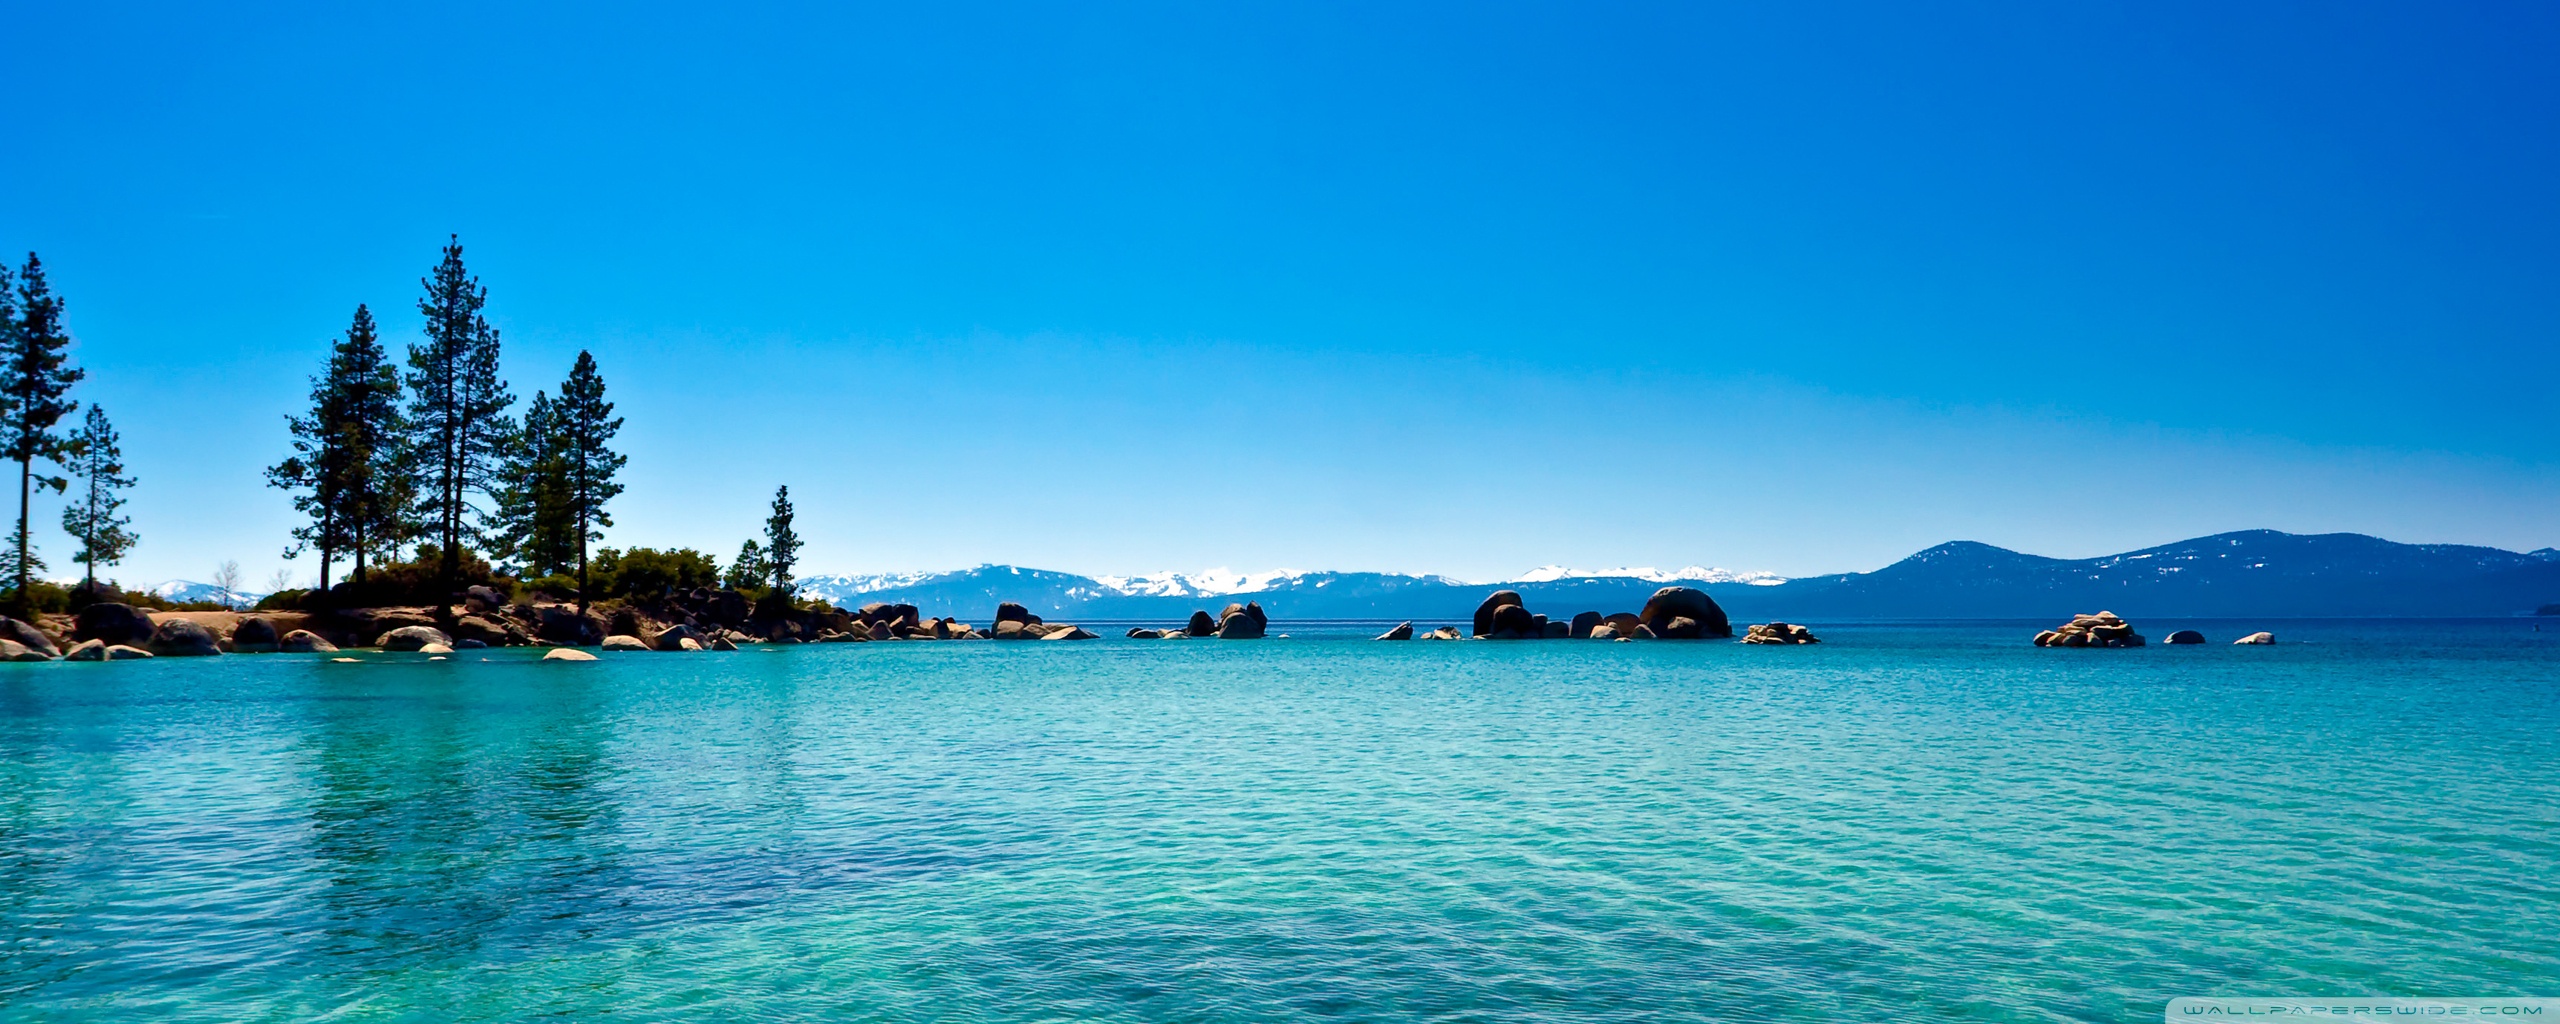 Hãy tải nền máy tính độ phân giải 4K HD miễn phí cho hồ Lake Tahoe California để thưởng thức tuyệt đẹp như thật. Những gam màu và sự sống động của hồ sẽ khiến bạn bị mê hoặc ngay từ cái nhìn đầu tiên.